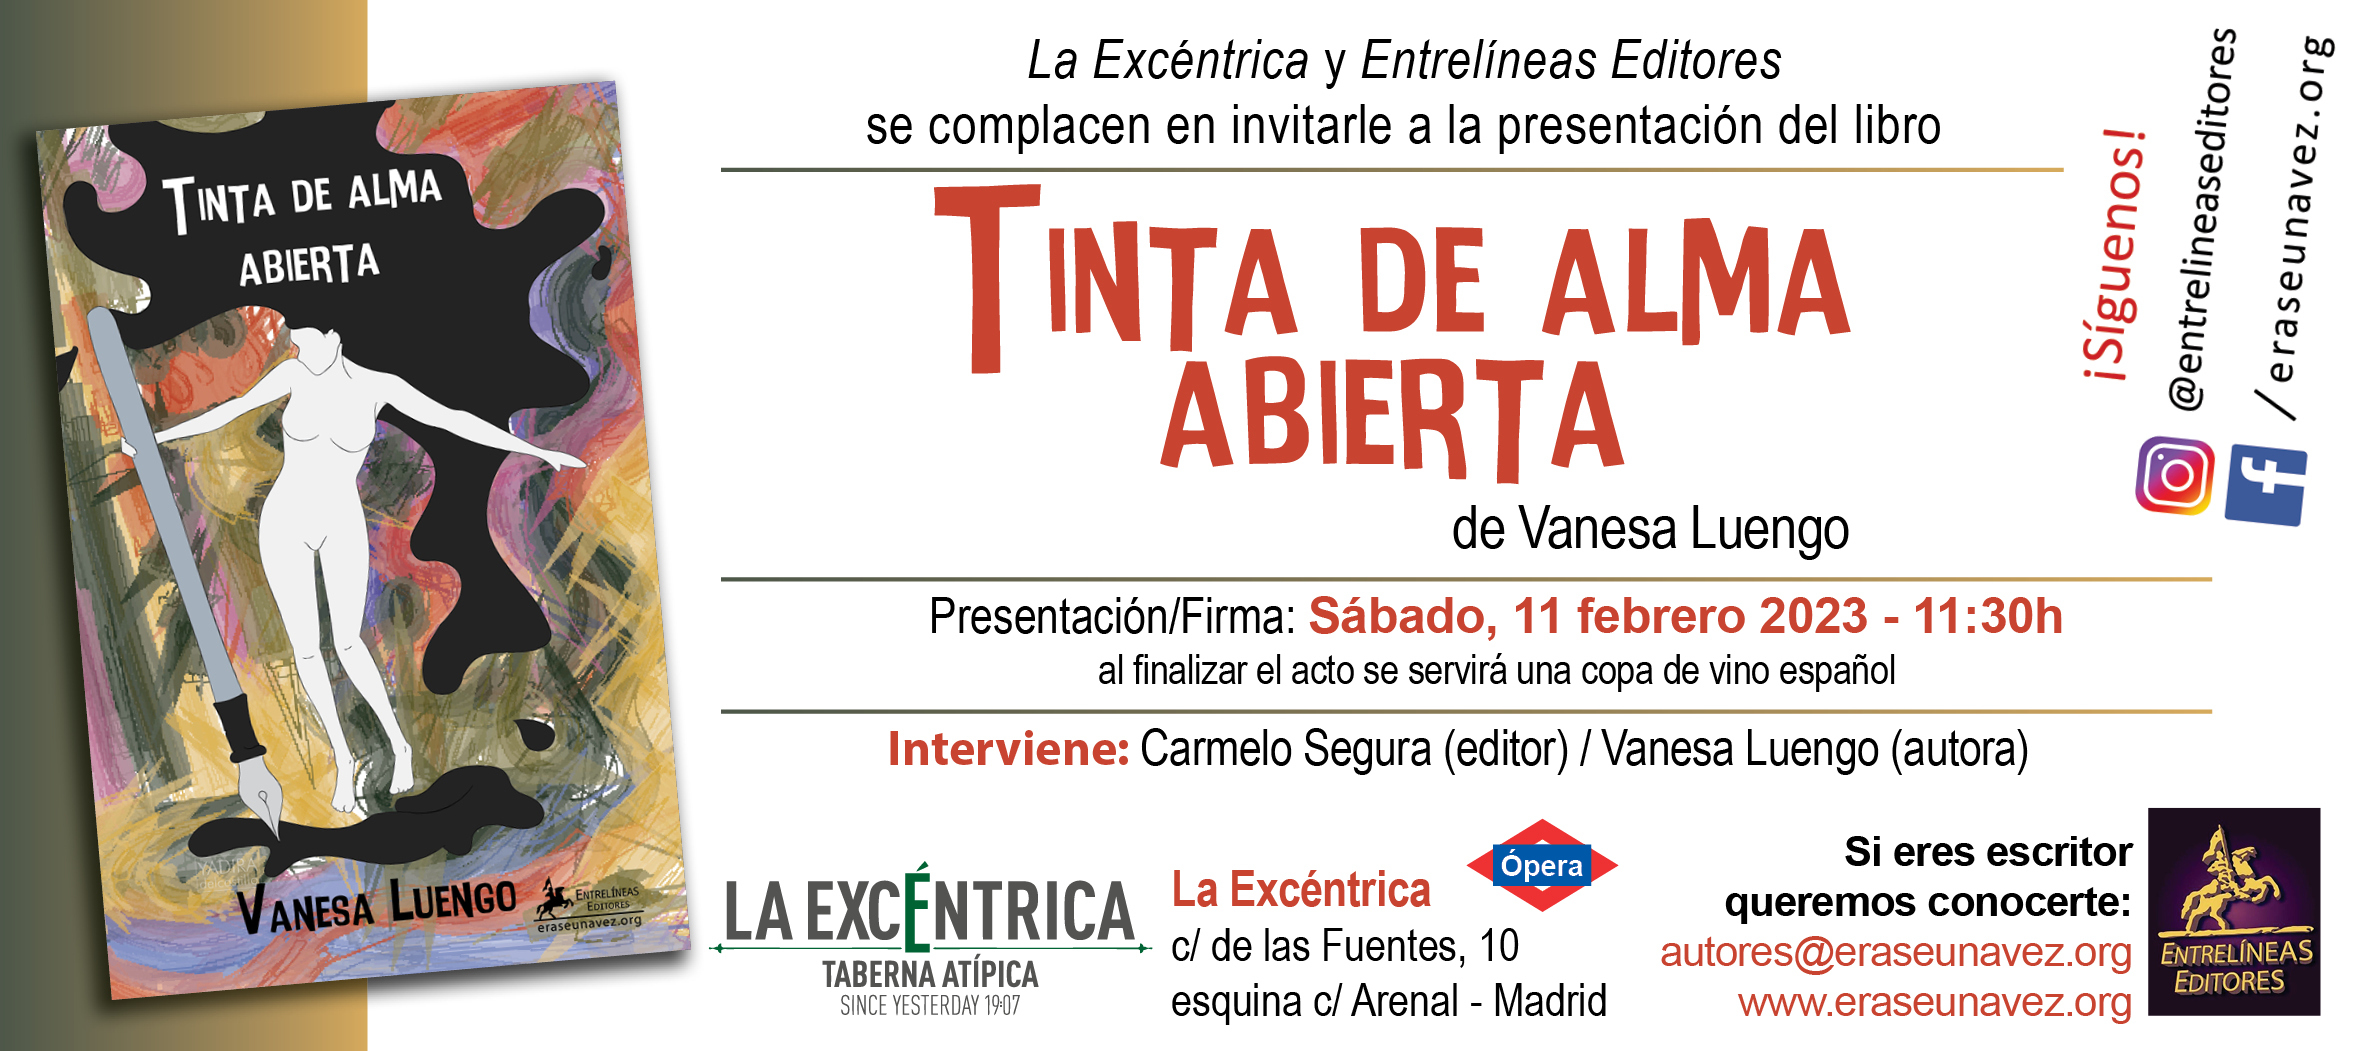 2023-02-11_-_Tinta_de_alma_abierta_-_invitacion